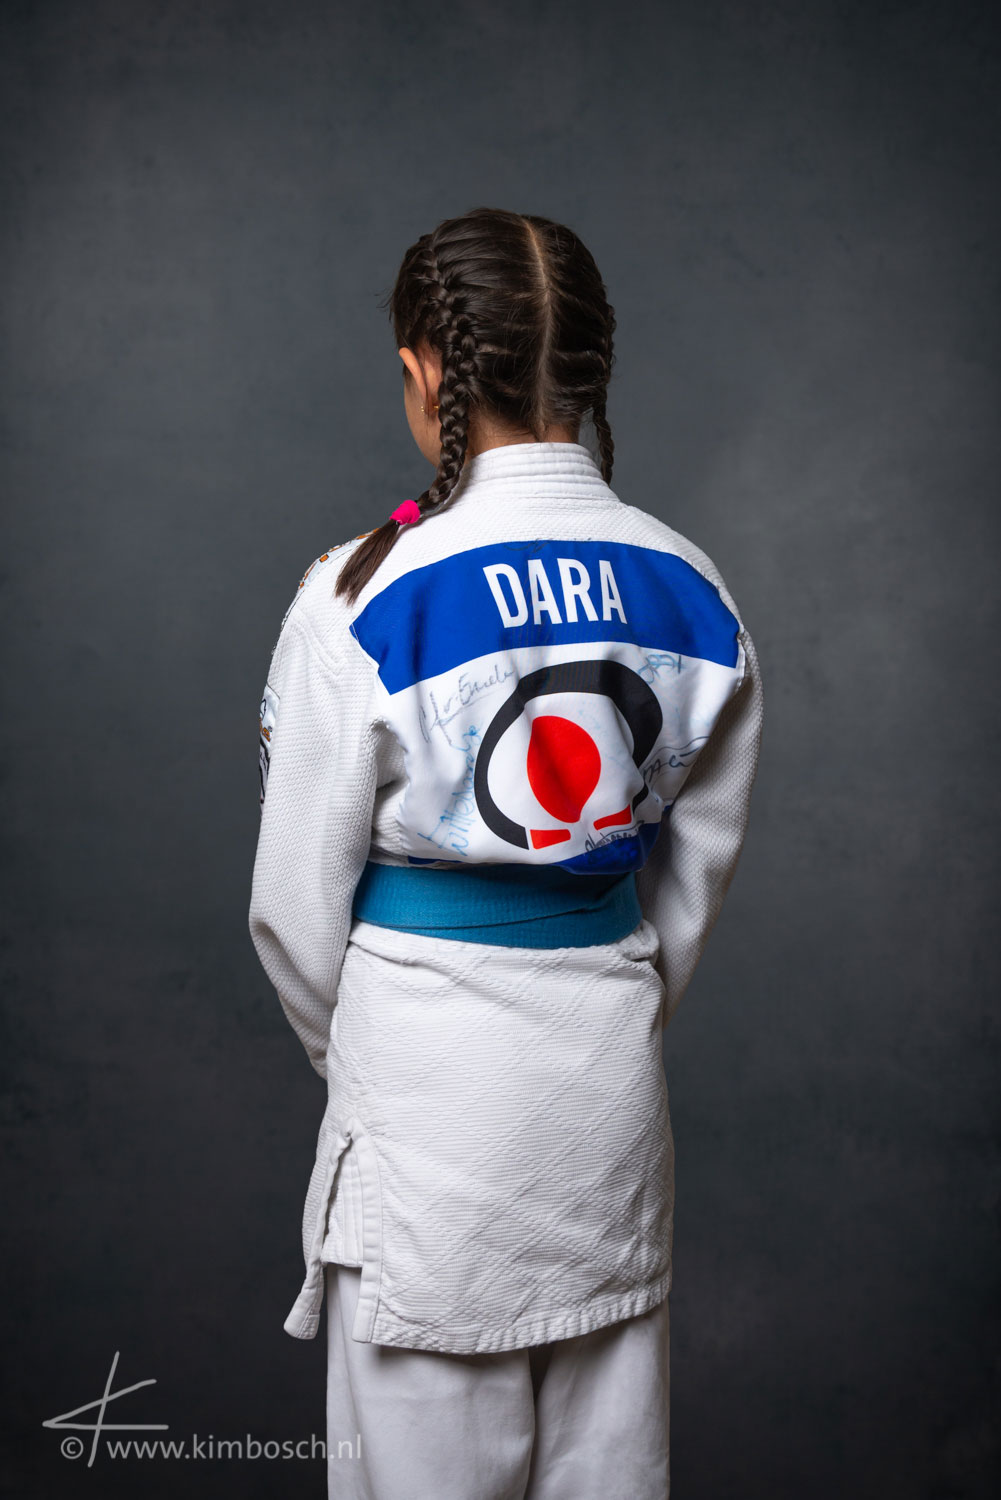 Judoka Dara 2019